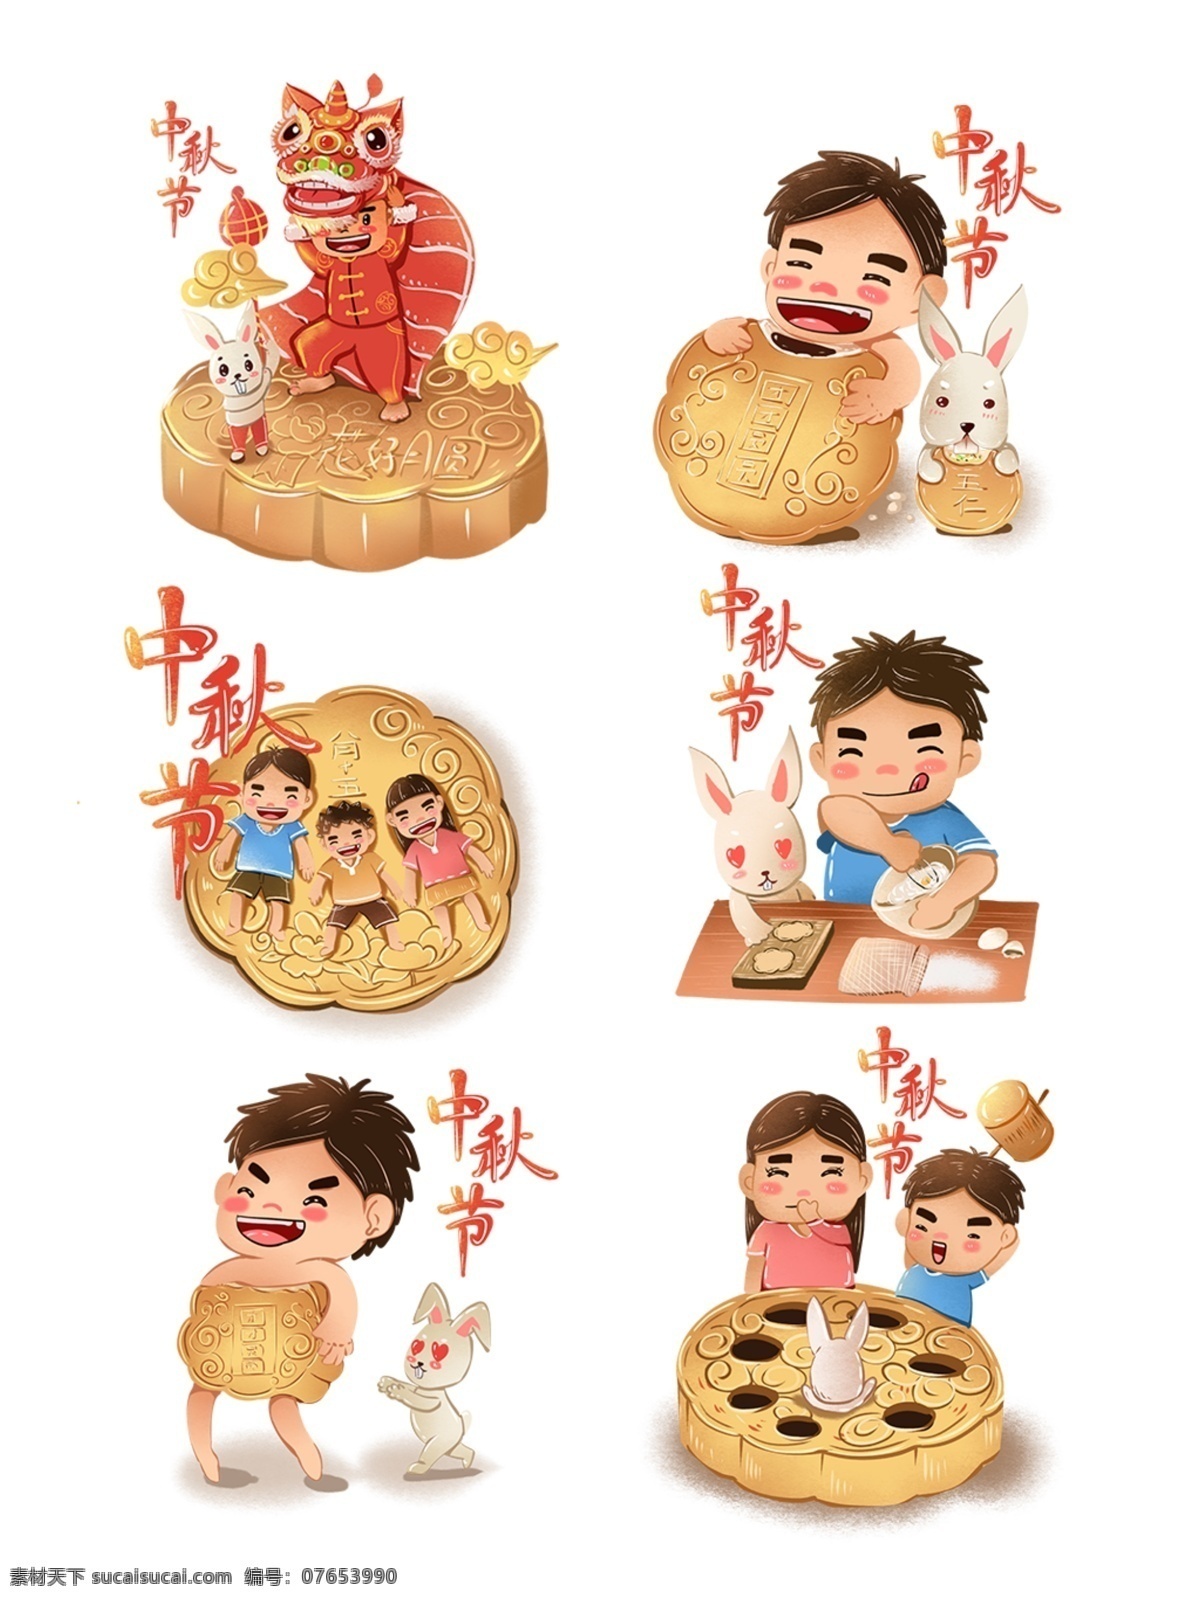 中秋节 八月 十 五 创意 插画 八月十五 舞狮 玉兔 创意插画 打地鼠 大团圆 吃月饼 五仁月饼